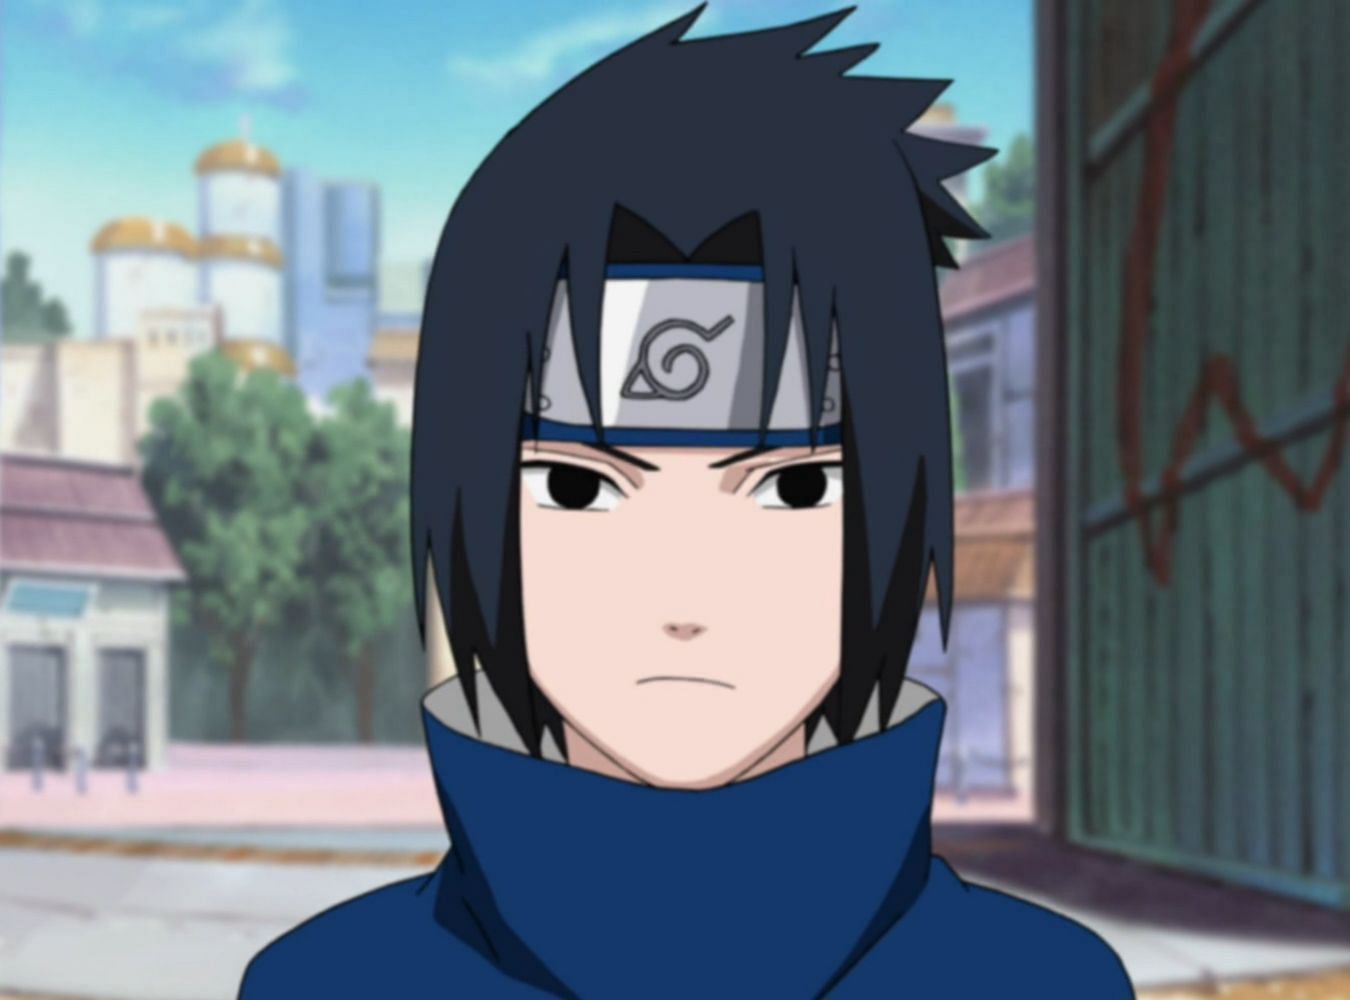 Sasuke as he appears during Naruto (Image via Studio Pierrot)